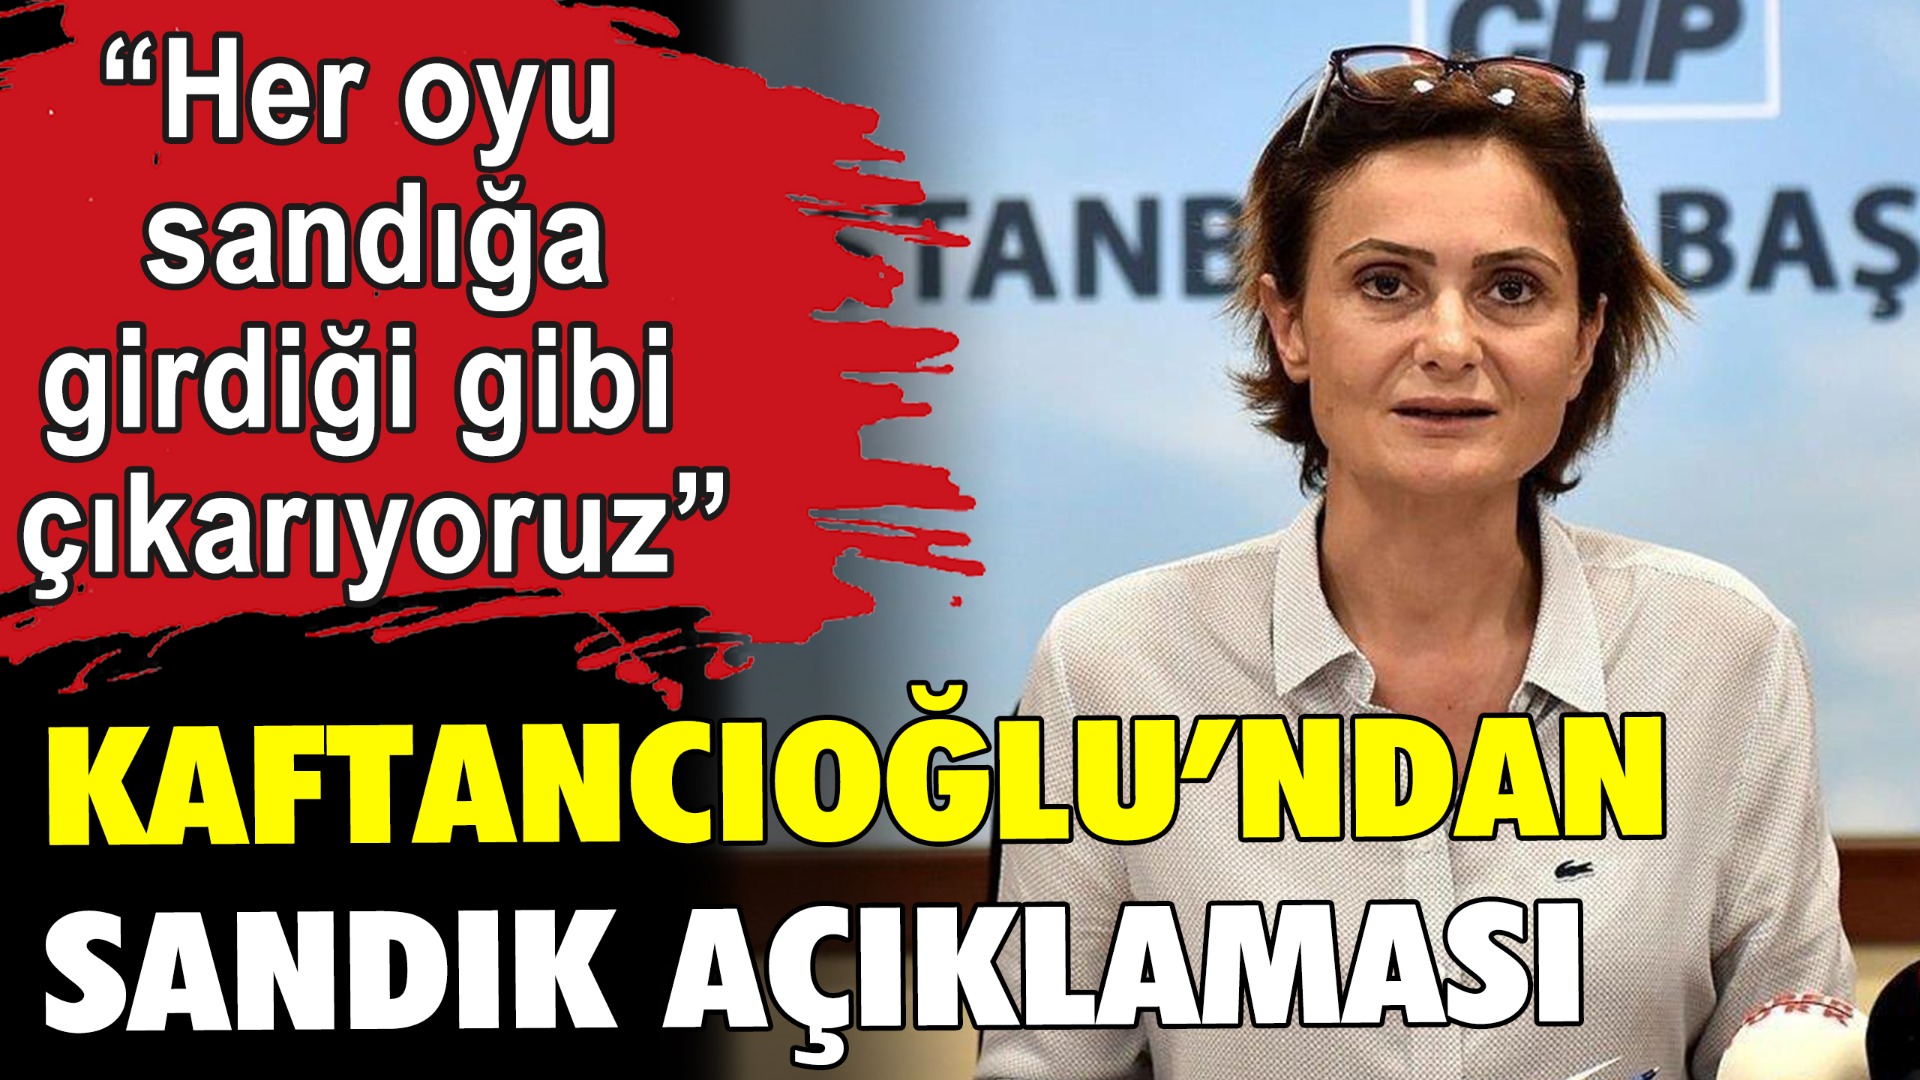 Canan Kaftancıoğlu'ndan sandık açıklaması: "Her oyu sandığa girdiği gibi çıkarıyoruz"